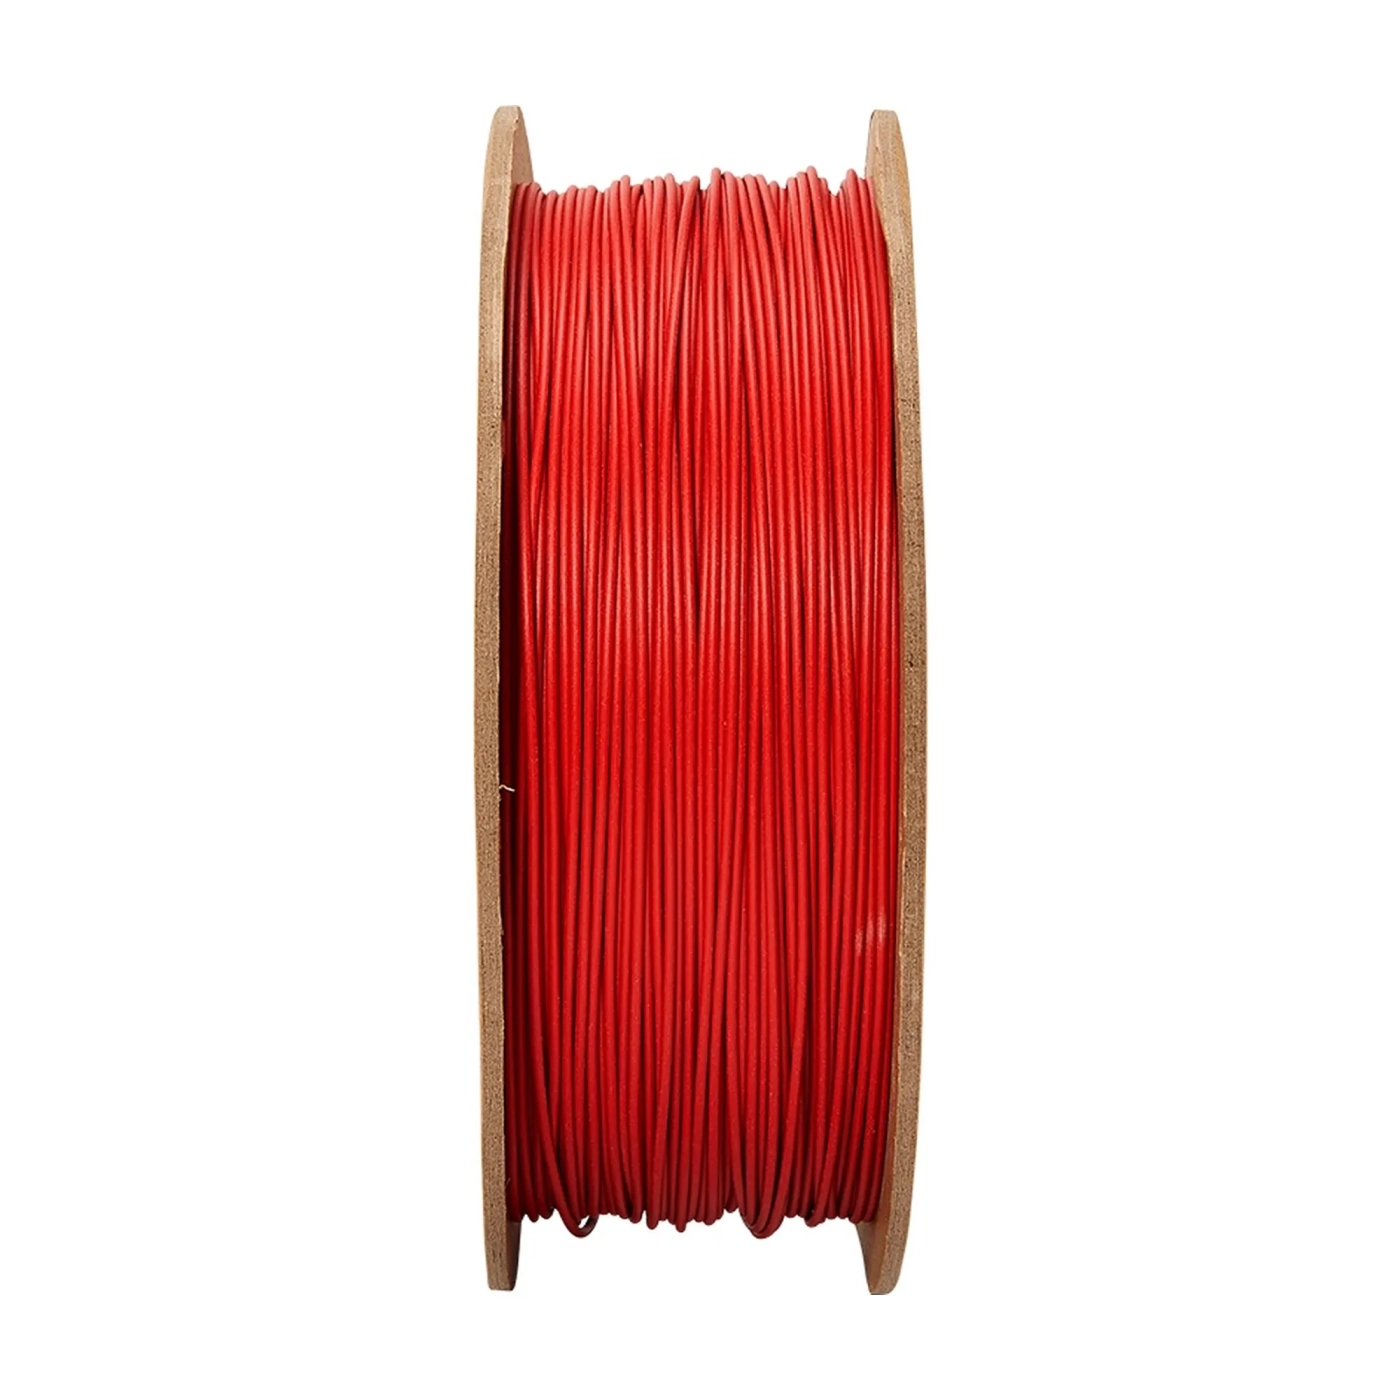 Купить PolyTerra PLA Filament (пластик) для 3D принтера Polymaker 1кг, 1.75мм, армейский красный - фото 2